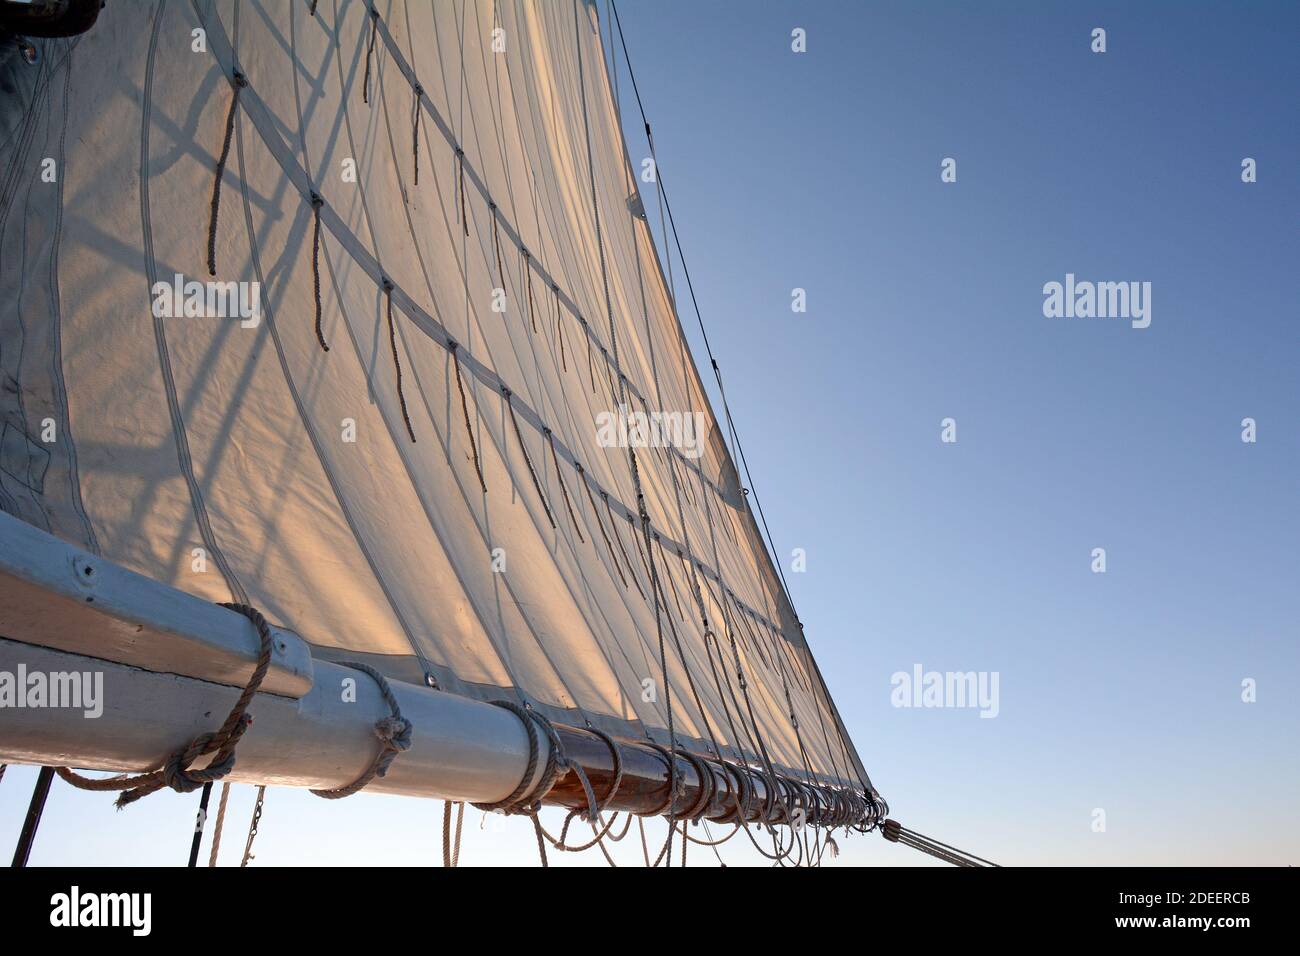 Segeln Sie auf einem Vintage Segelboot an einem Holzboom befestigt Stockfoto